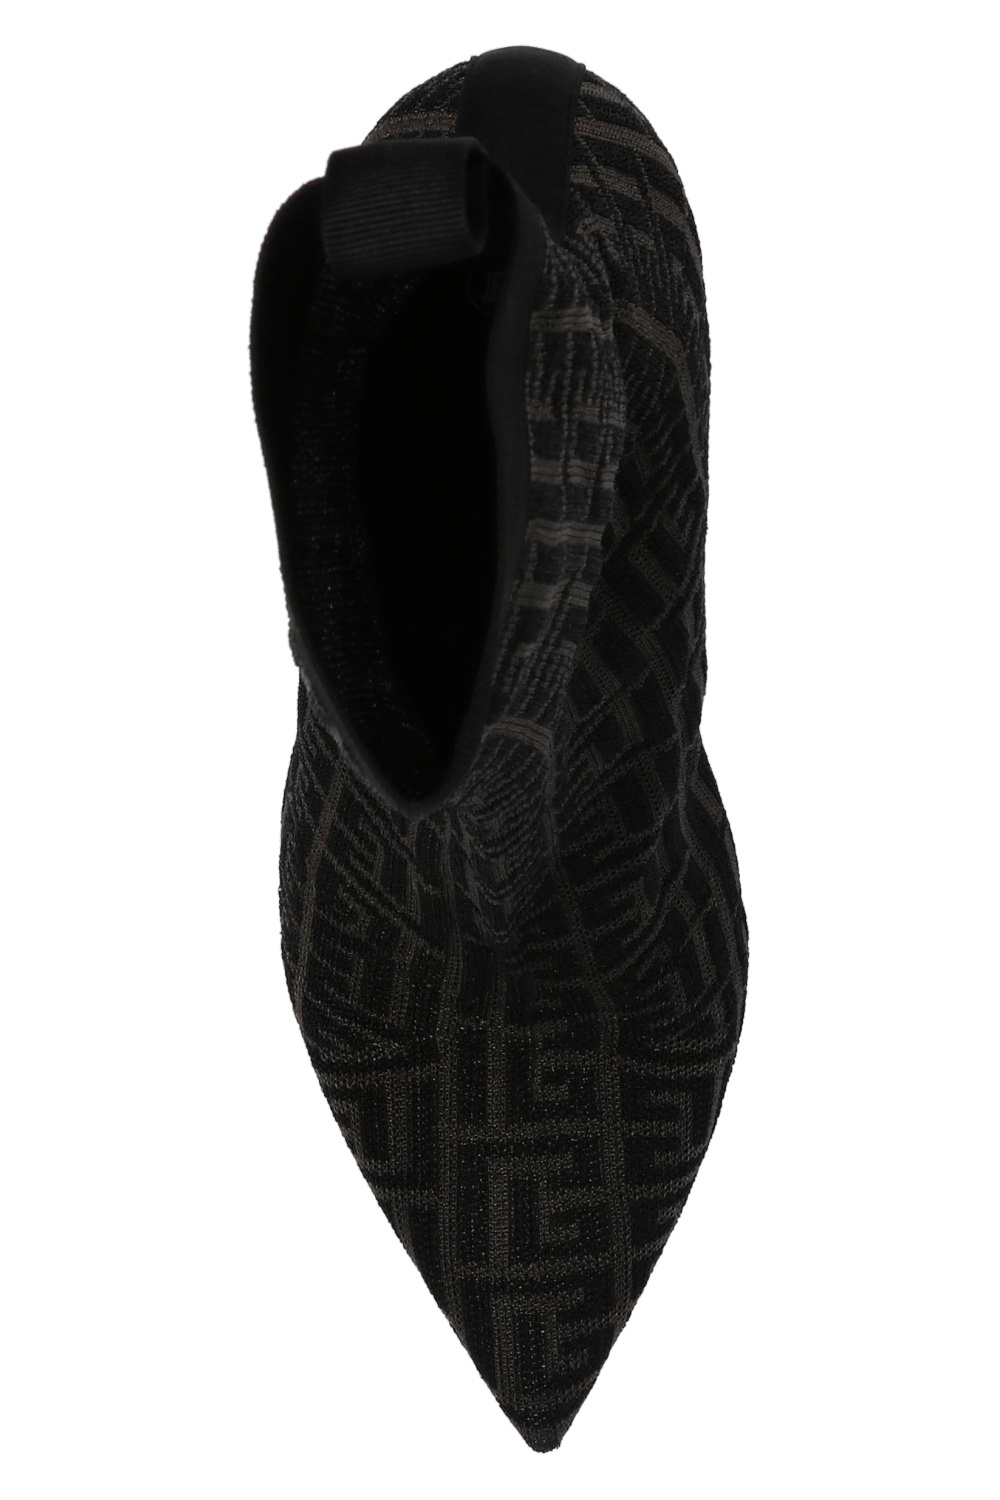 Balmain Detail of Mariah Careys Balmain booties